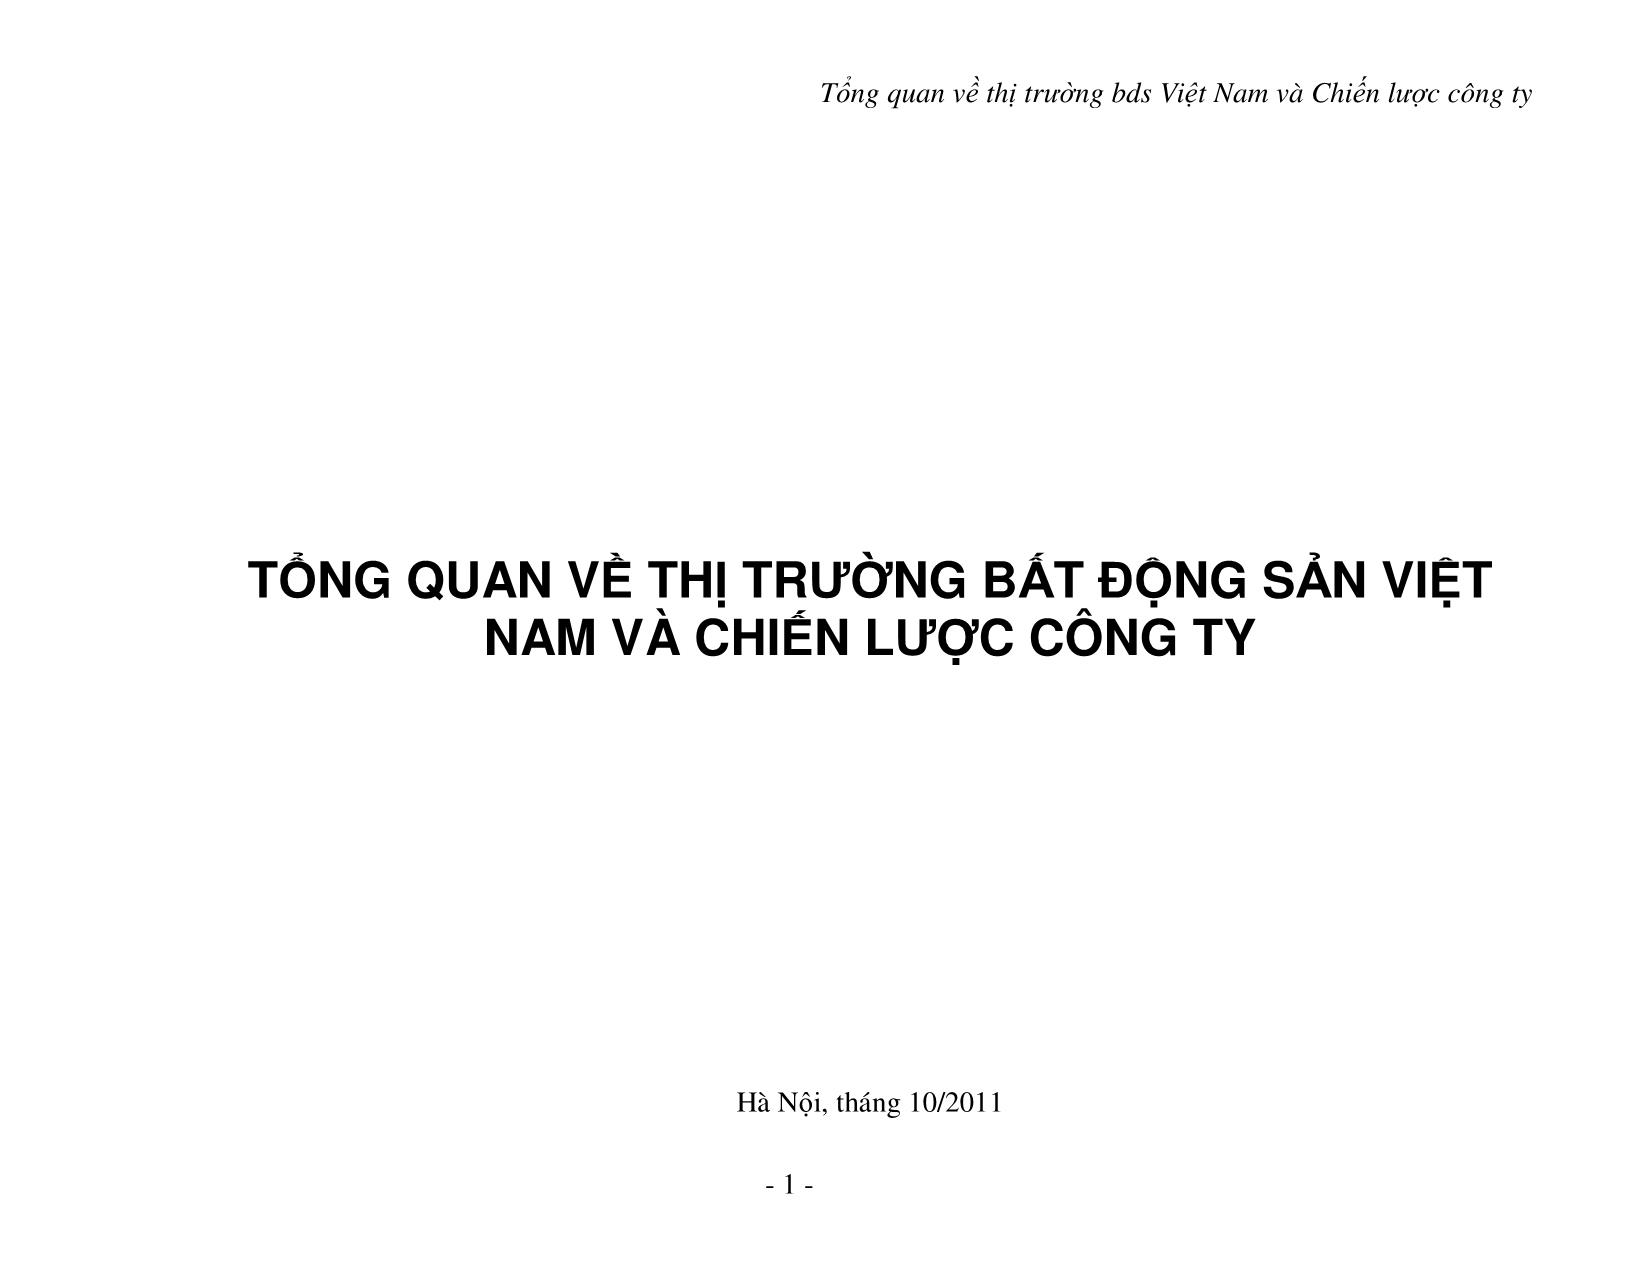 Tổng quan về thị trường bất động sản Việt Nam và chiến lược công ty trang 1